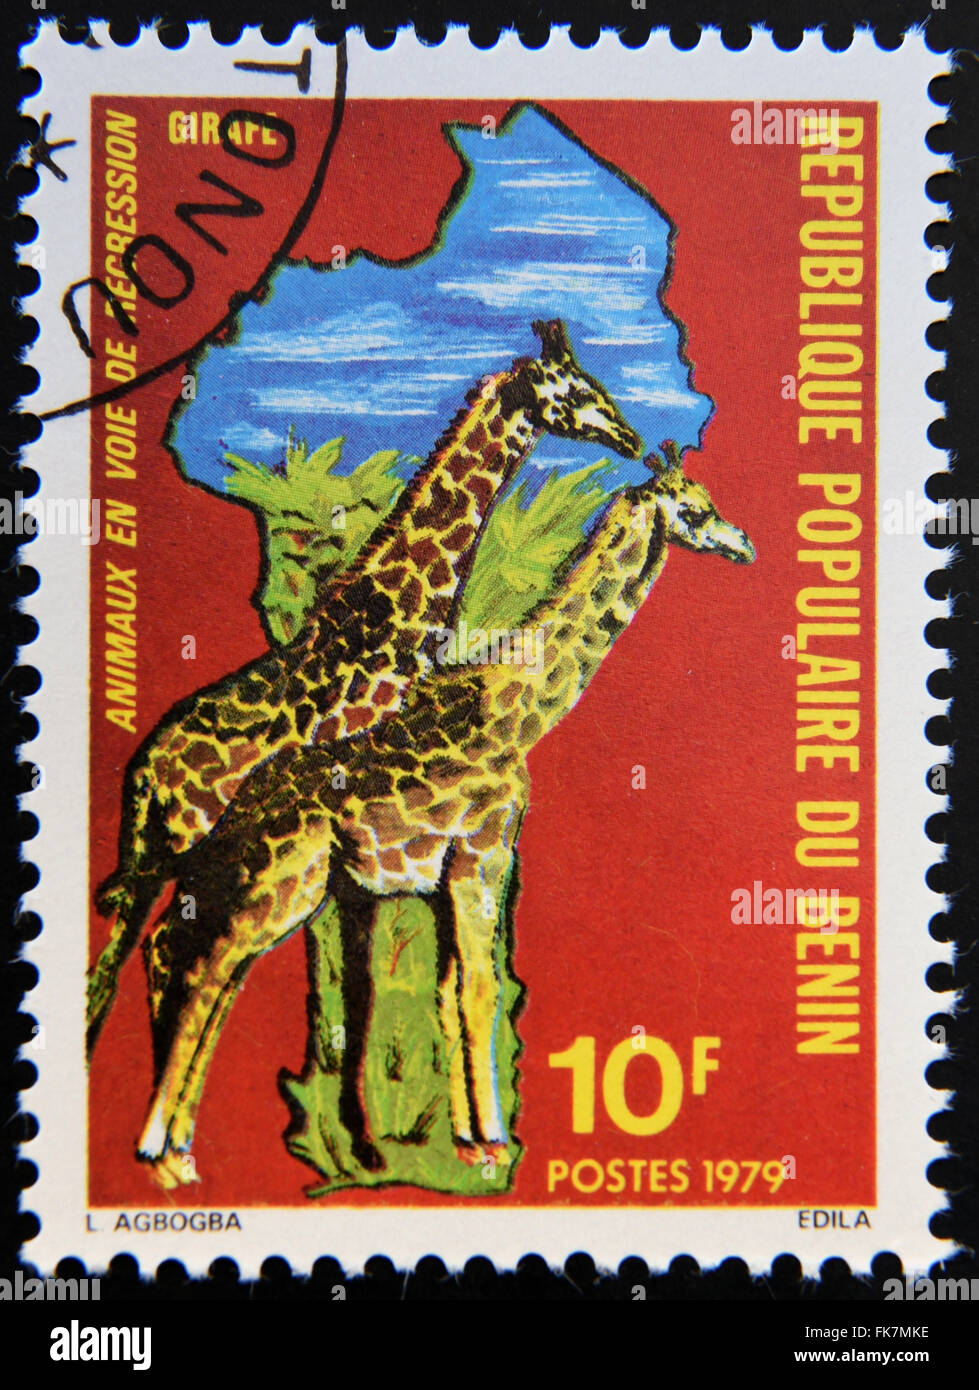 Bénin - circa 1979 : timbres en Bénin dédié aux animaux en voie de disparition, montre la carte de l'Afrique et les girafes, vers 1979. Banque D'Images